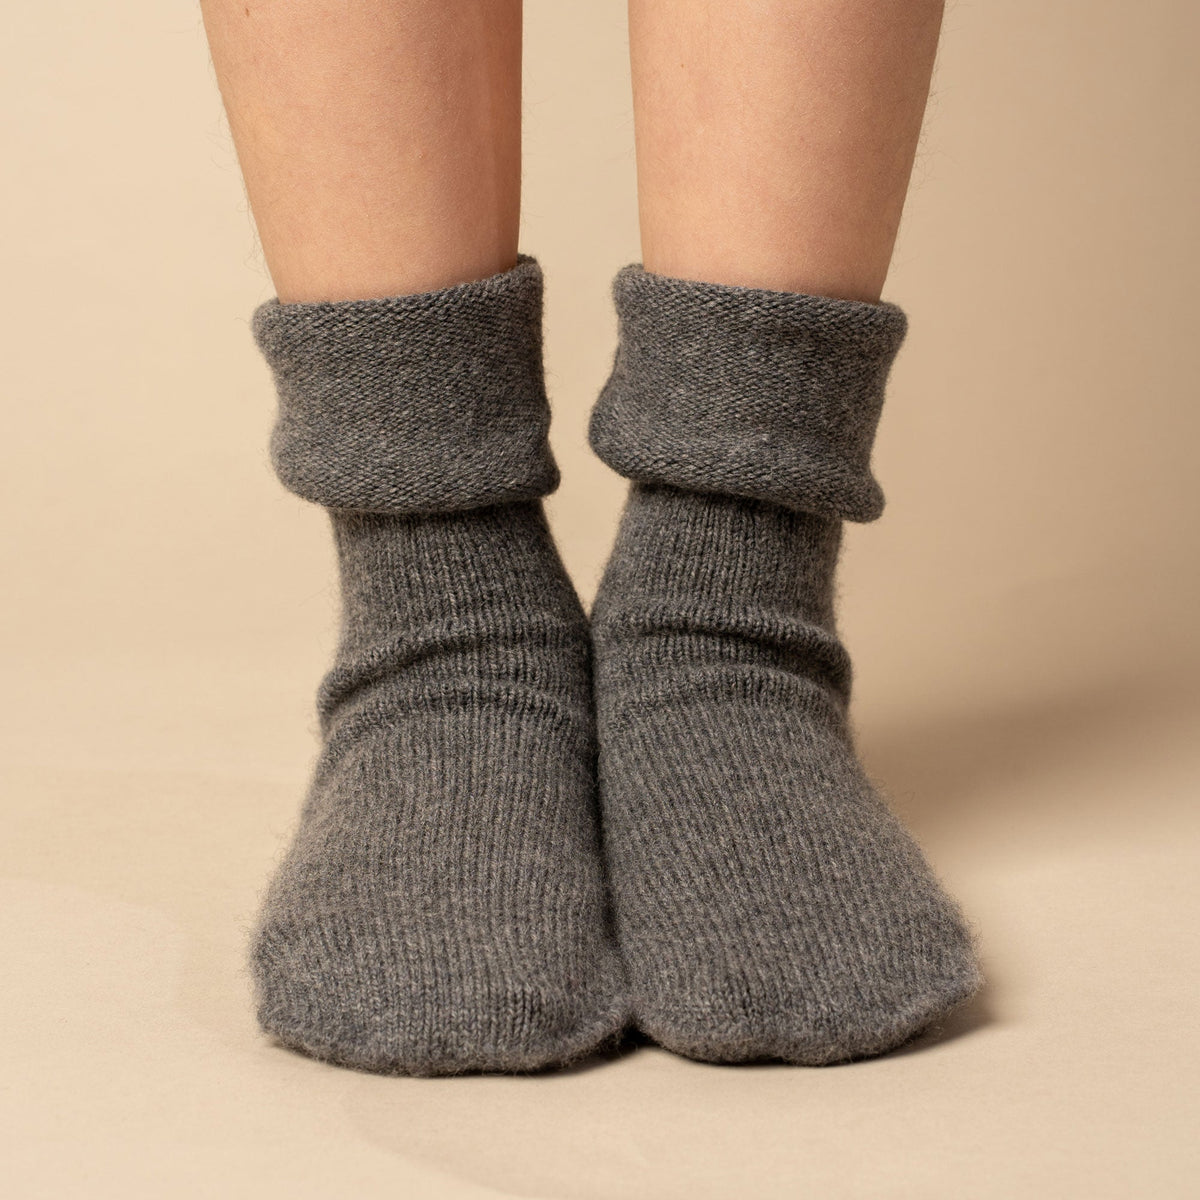 MENIQUE Merino & Cashmere Socks 3-Pack